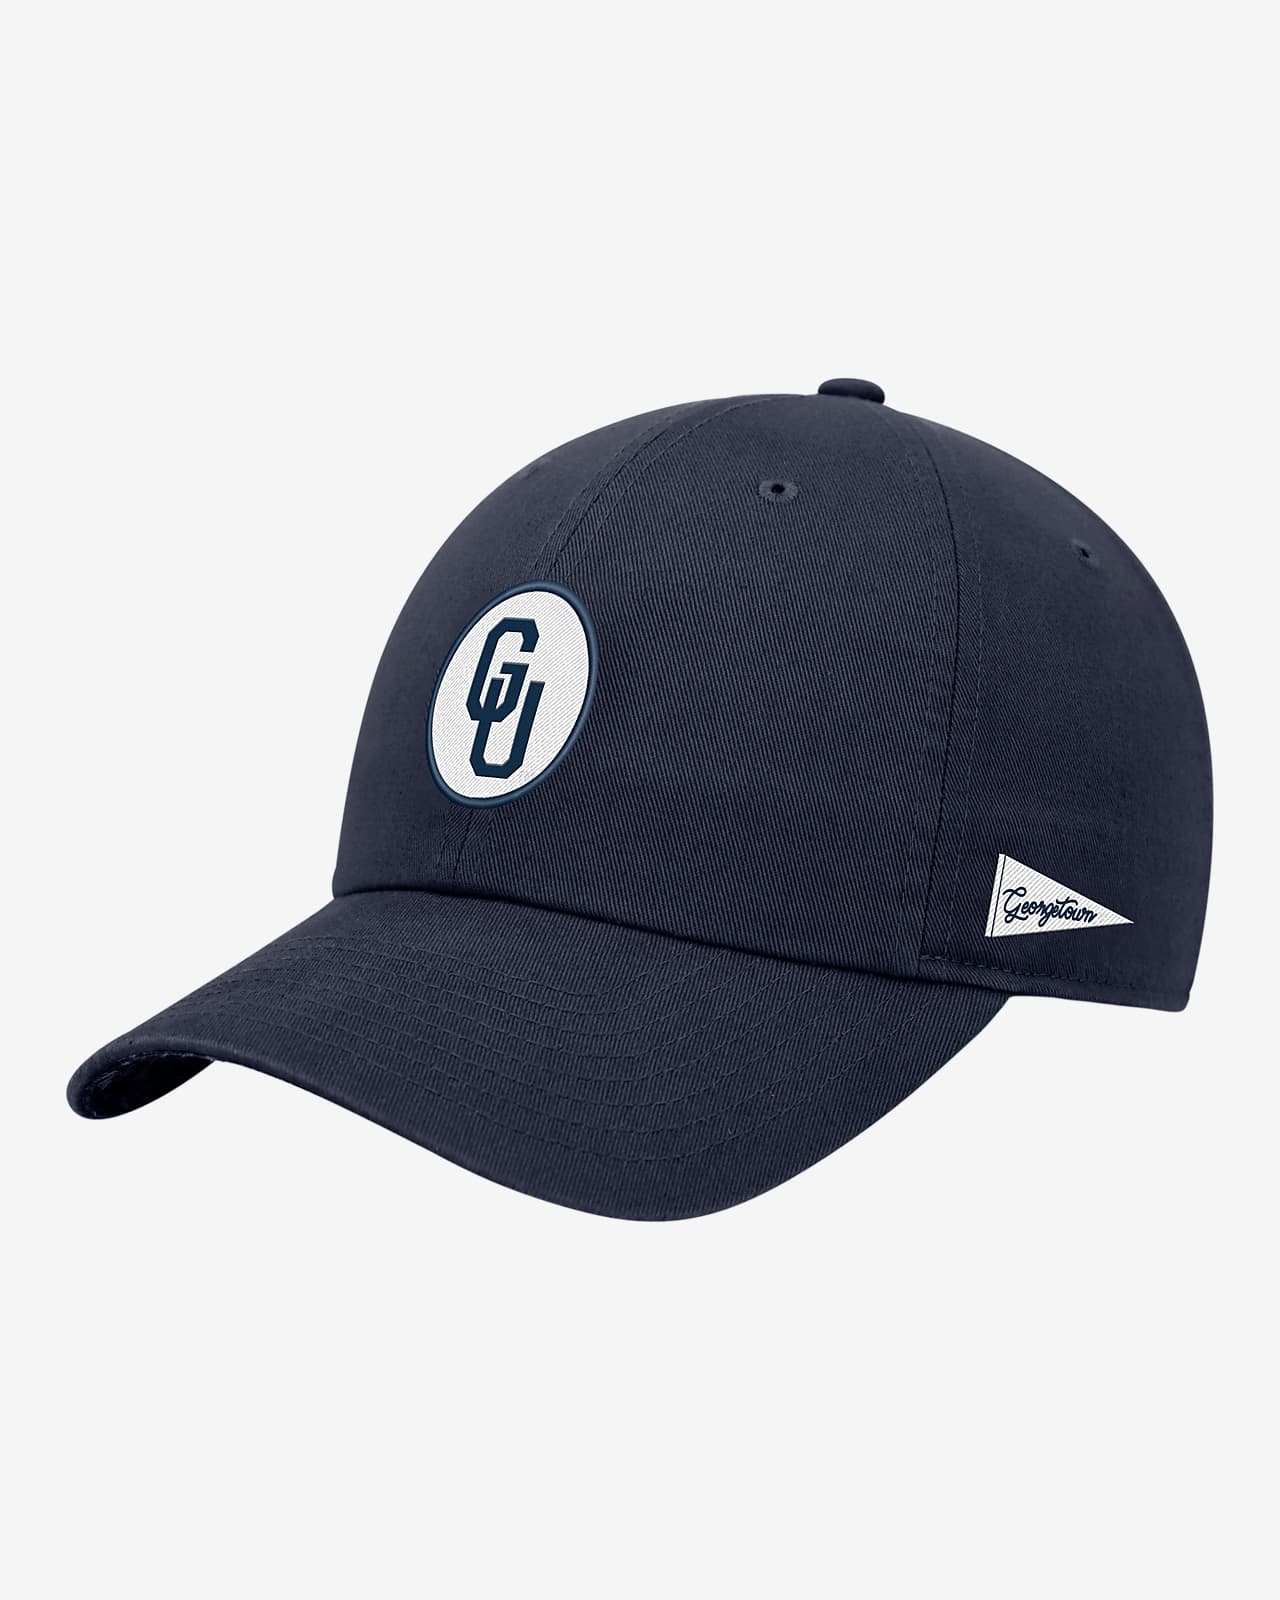 Georgetown Logo Nike College Adjustable Cap